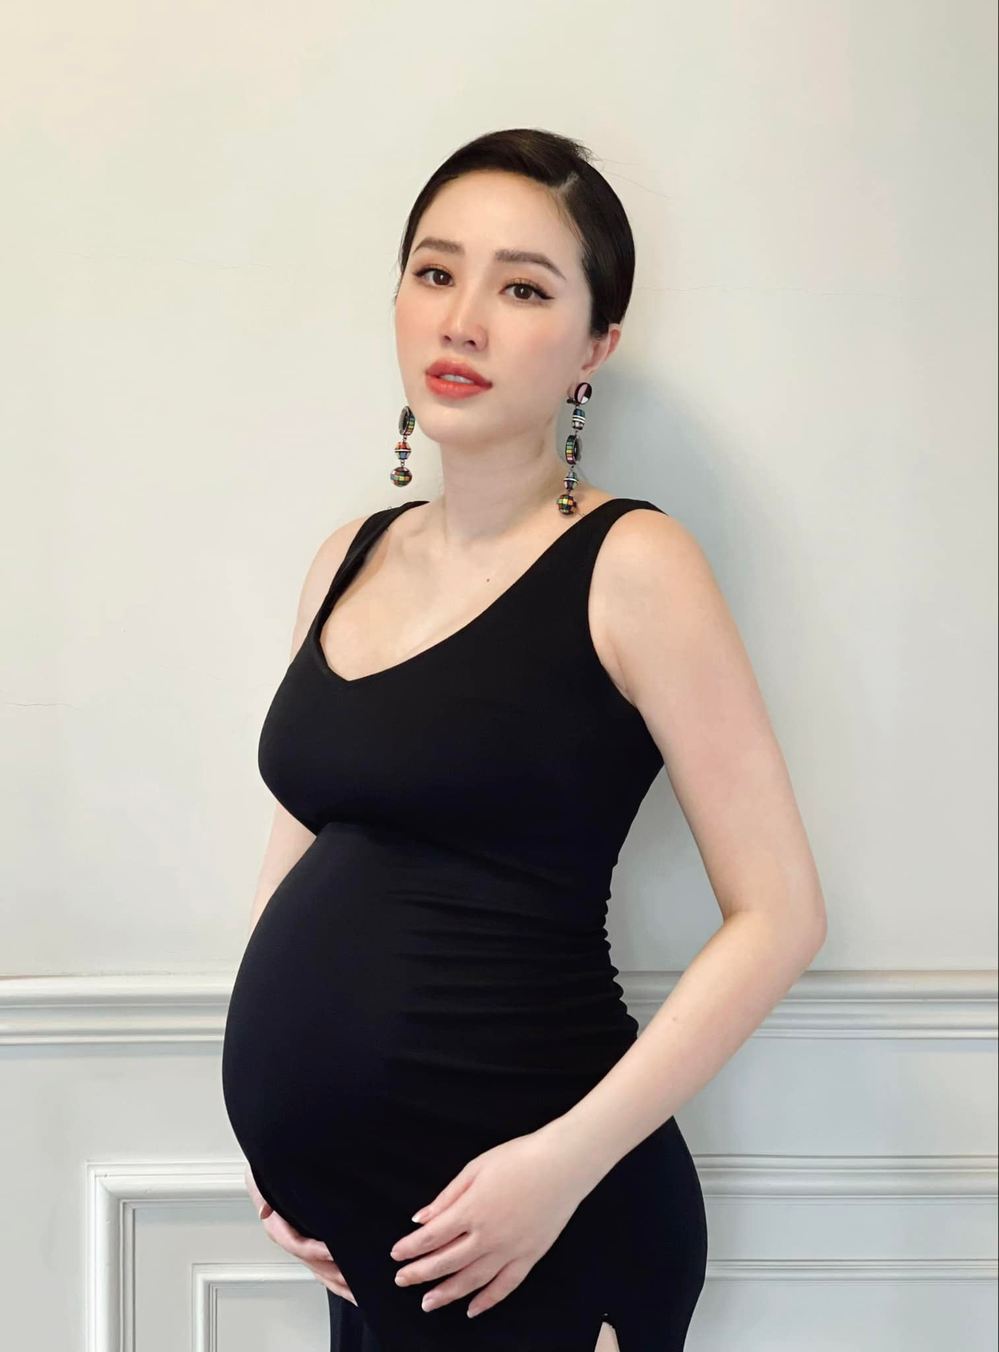 Hòa Minzy xả loạt ảnh mang thai bất ngờ nhan sắc mẹ bầu  2sao